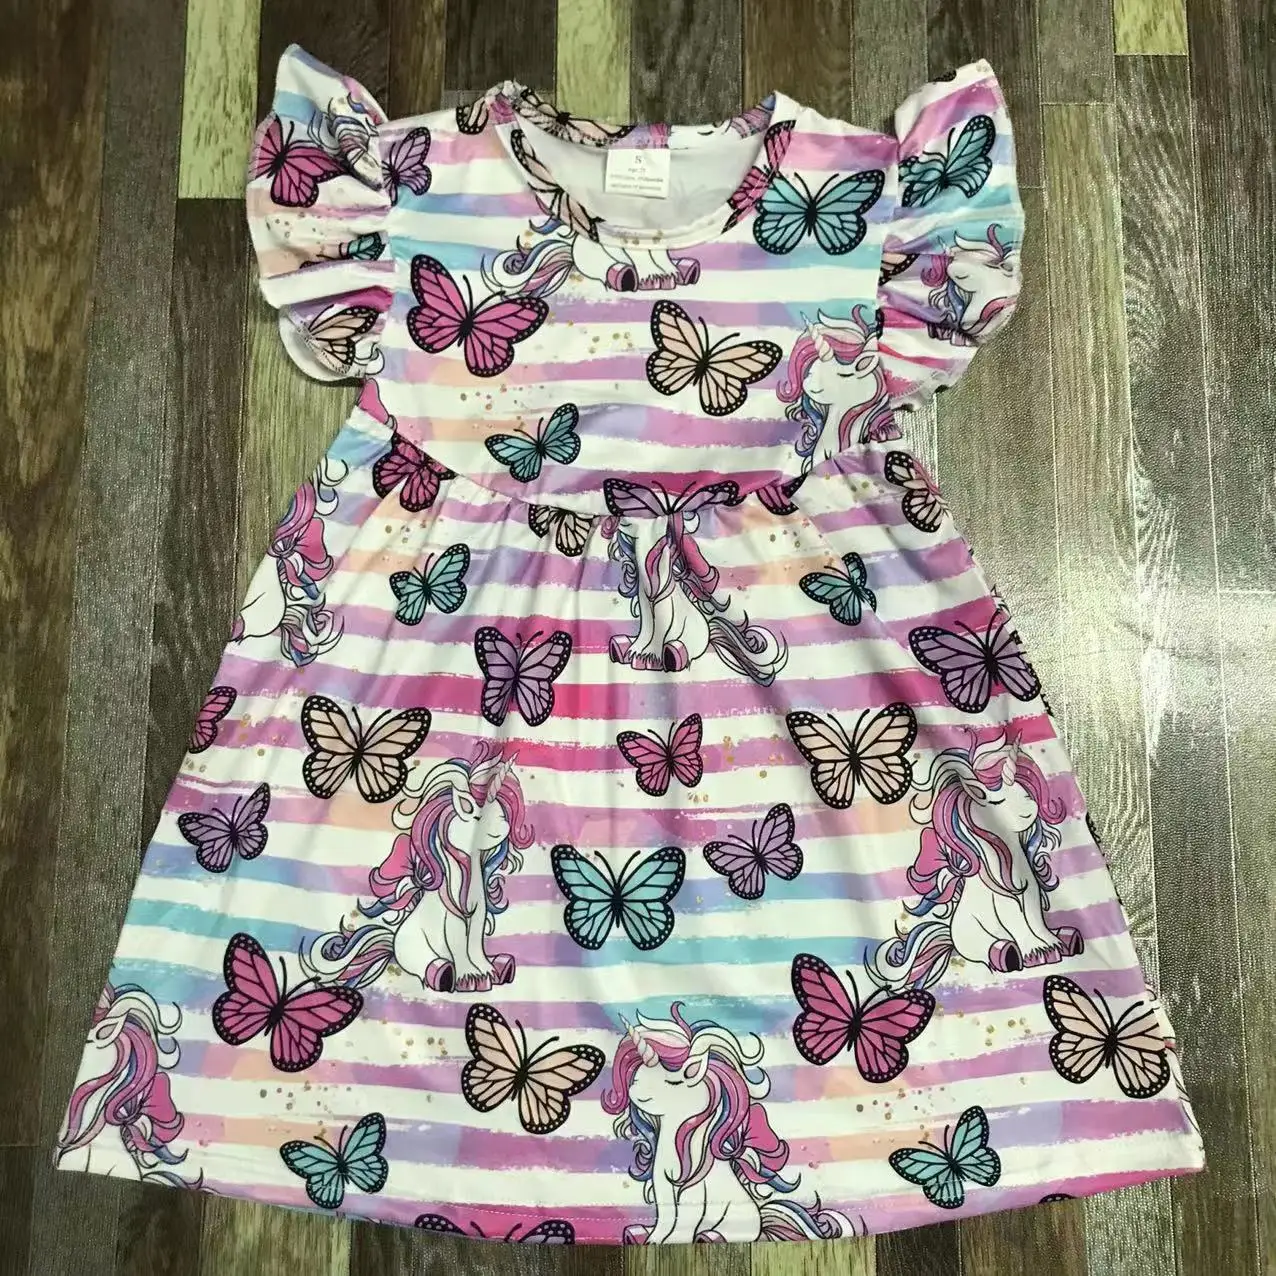 Лучшая одежда для девочек из бутика на лето и весну, изысканная детская одежда с бабочками Изображение 4